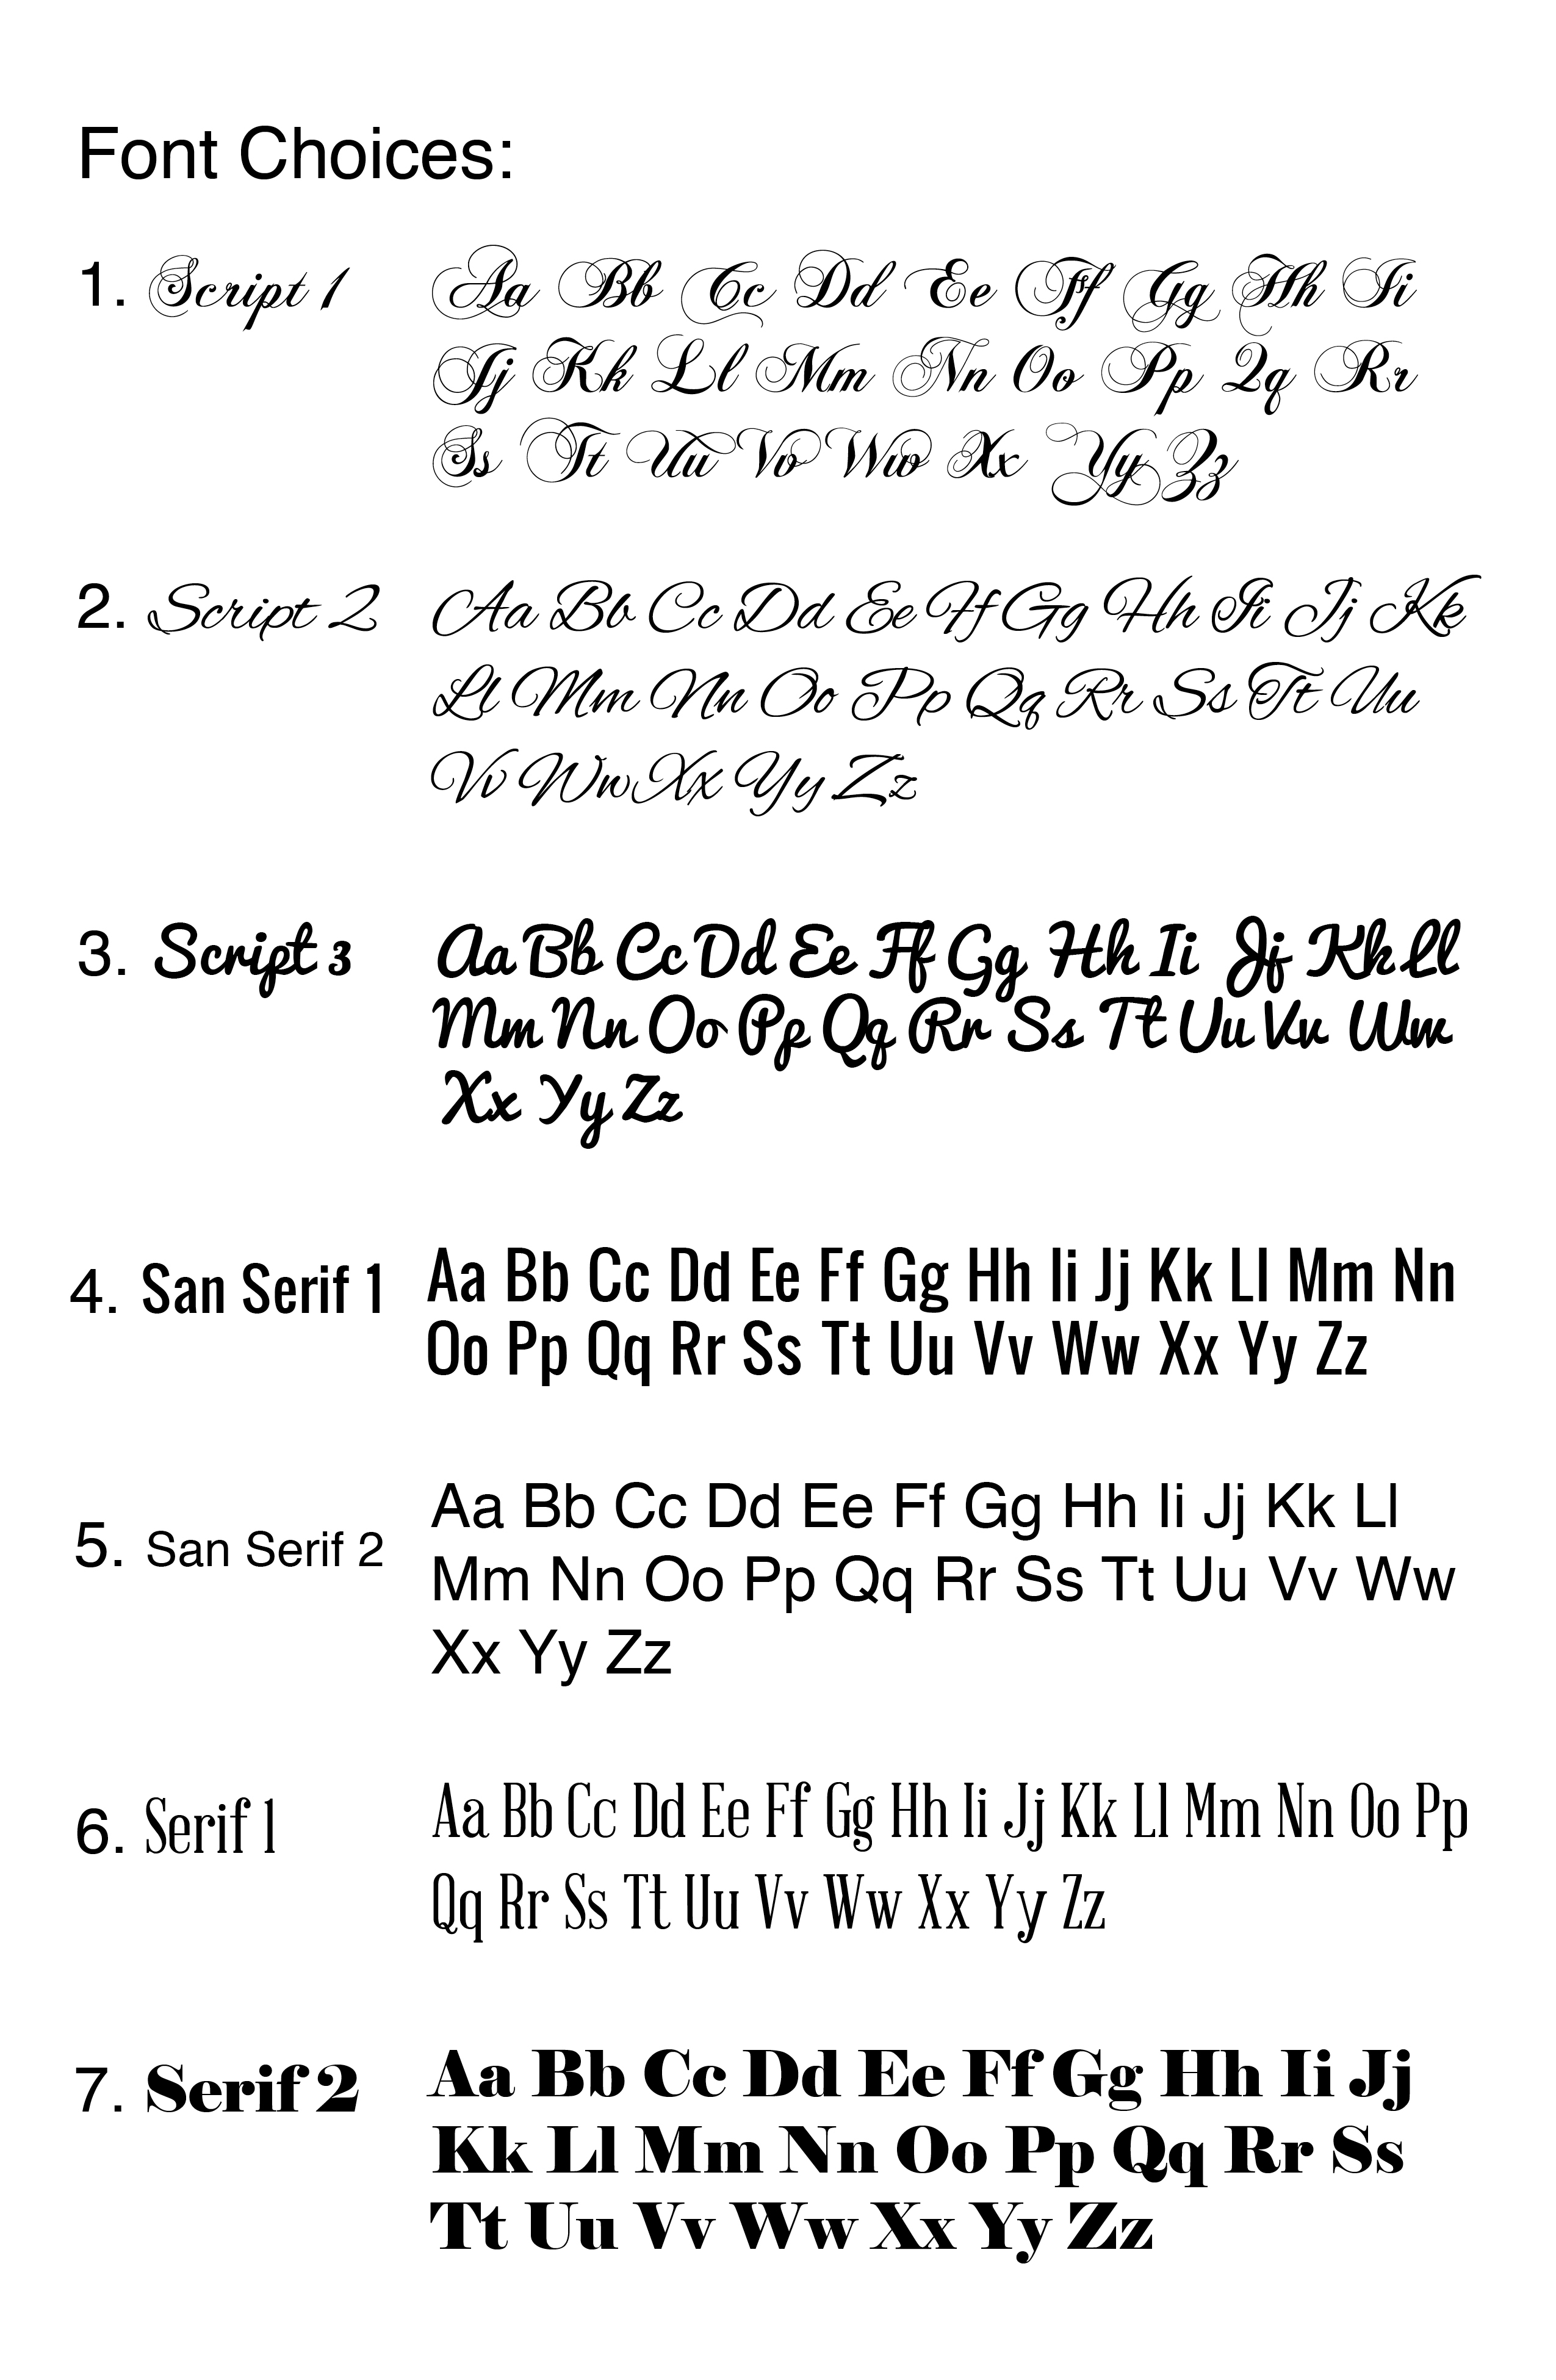 Font Style Chart